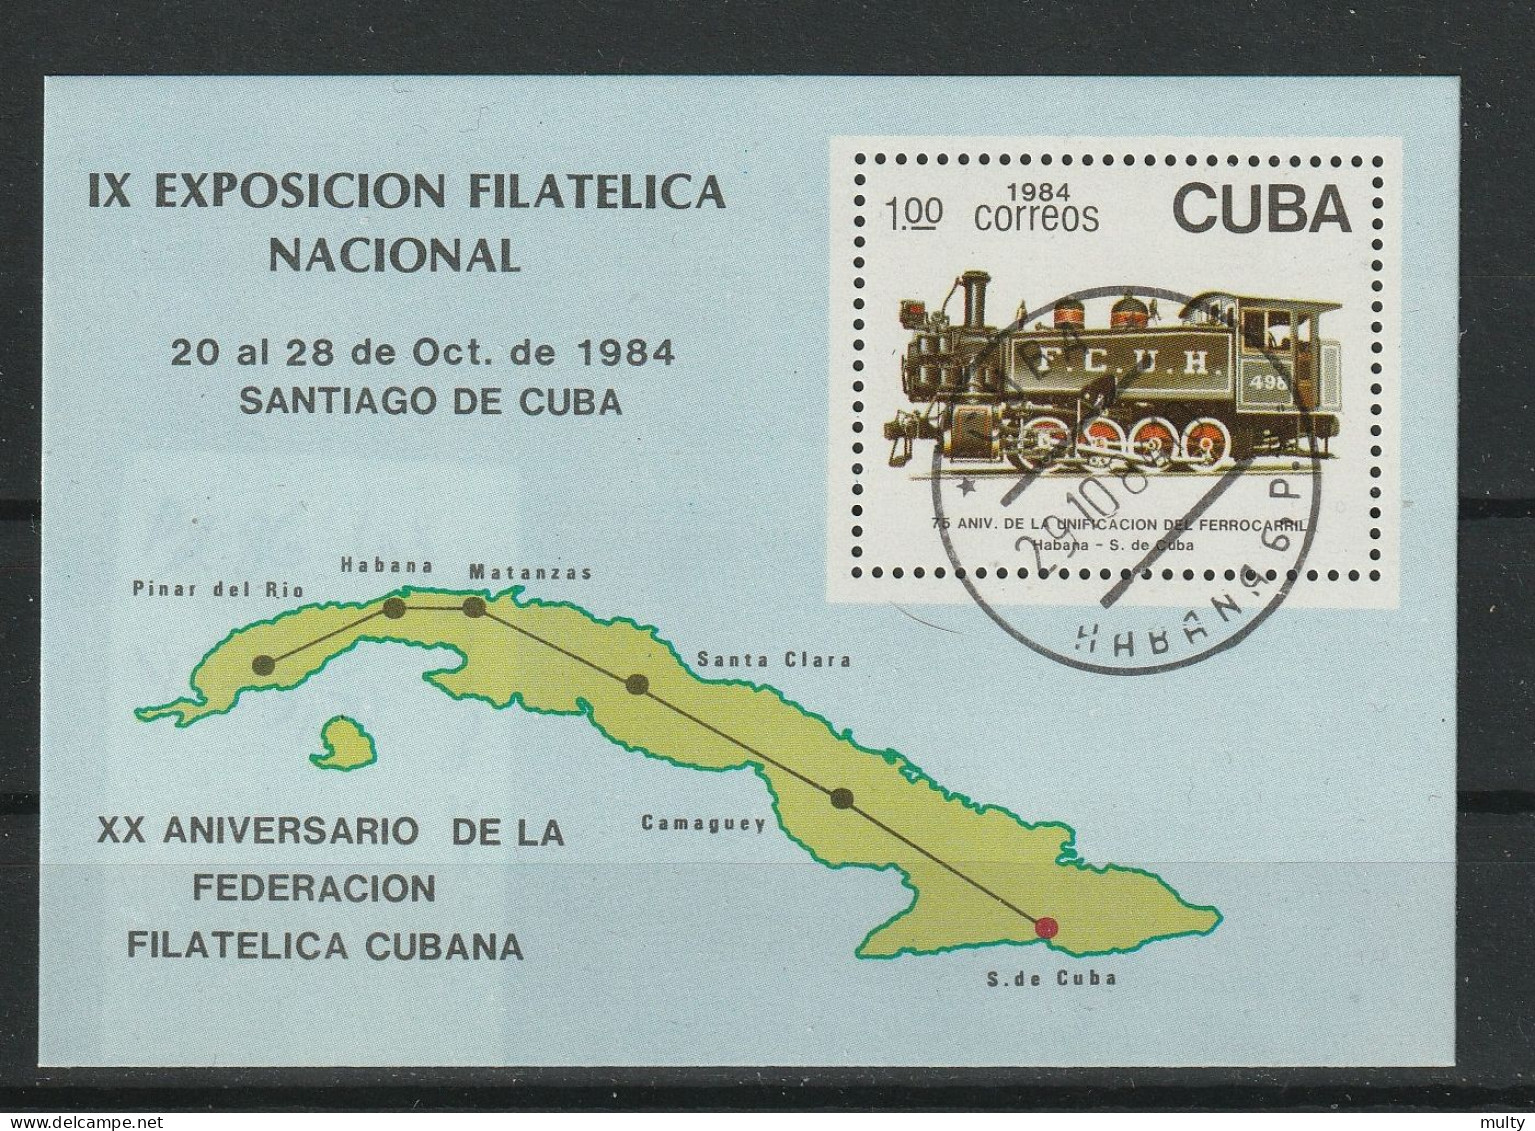 Cuba Y/T Blok 86 (0) - Blocs-feuillets